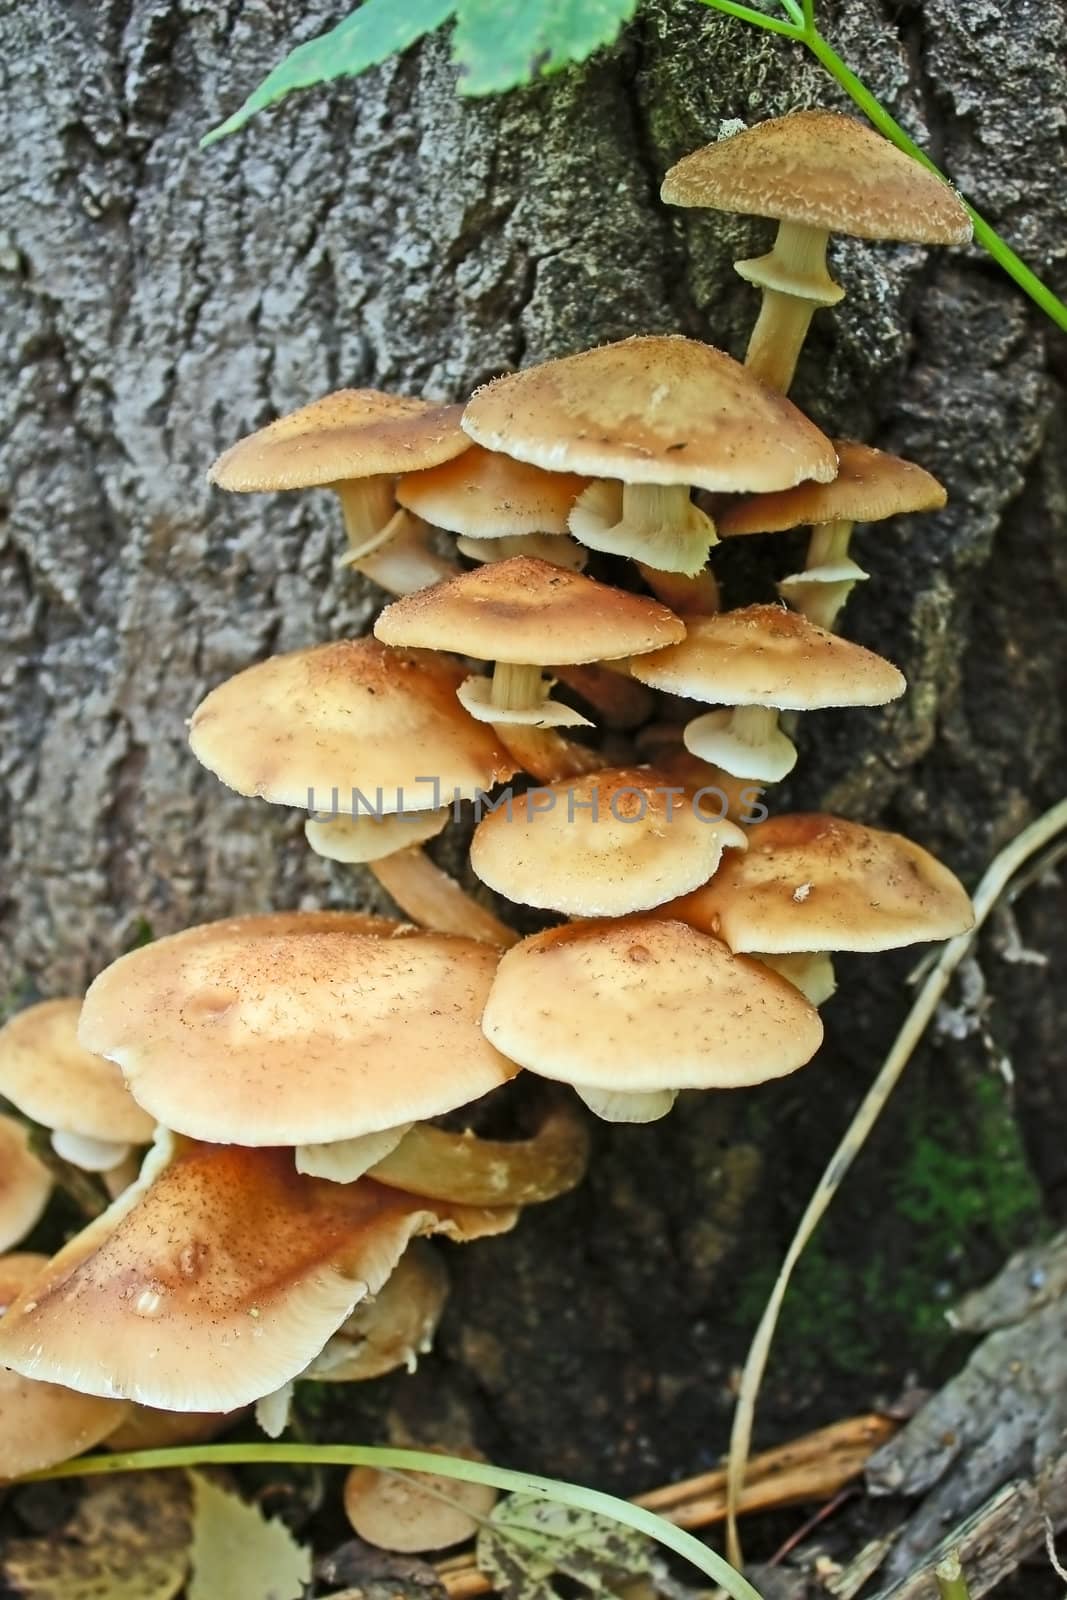  mushrooms by zhannaprokopeva